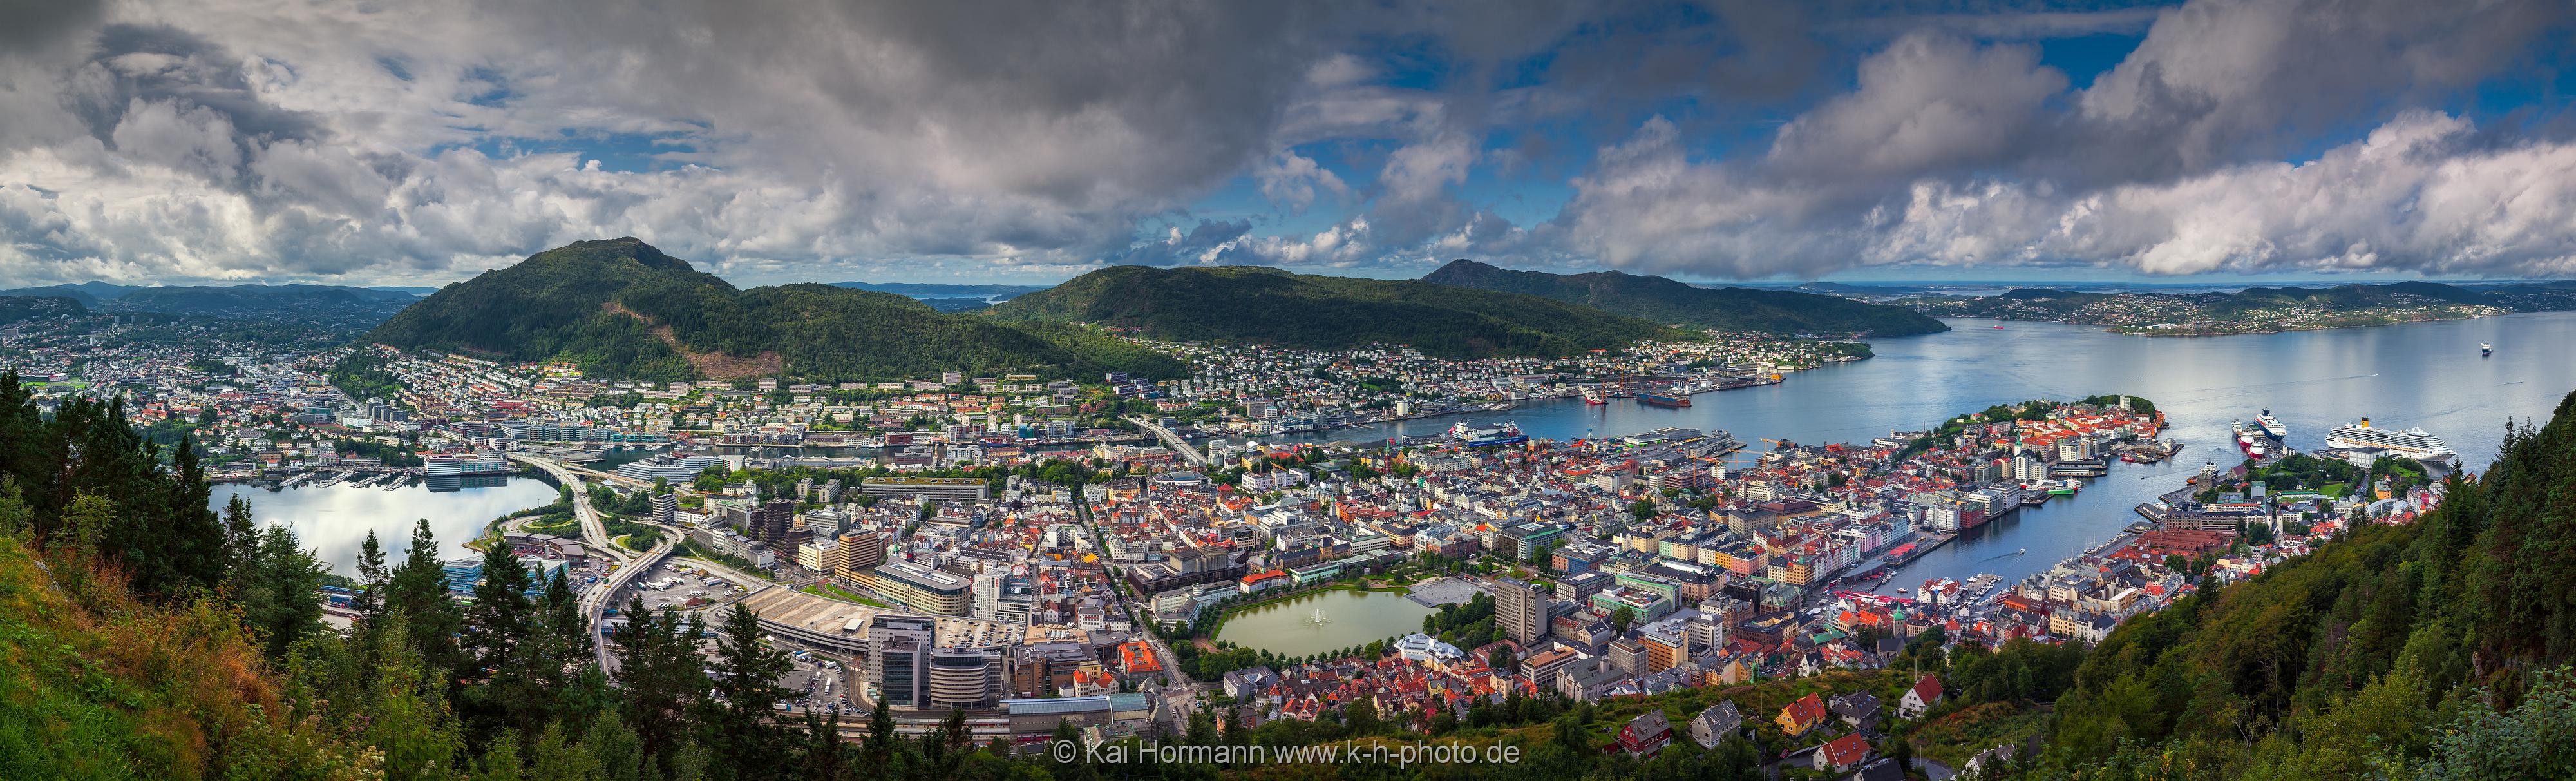 Norwegen Bergen Panorama. Bergen,Norwegen